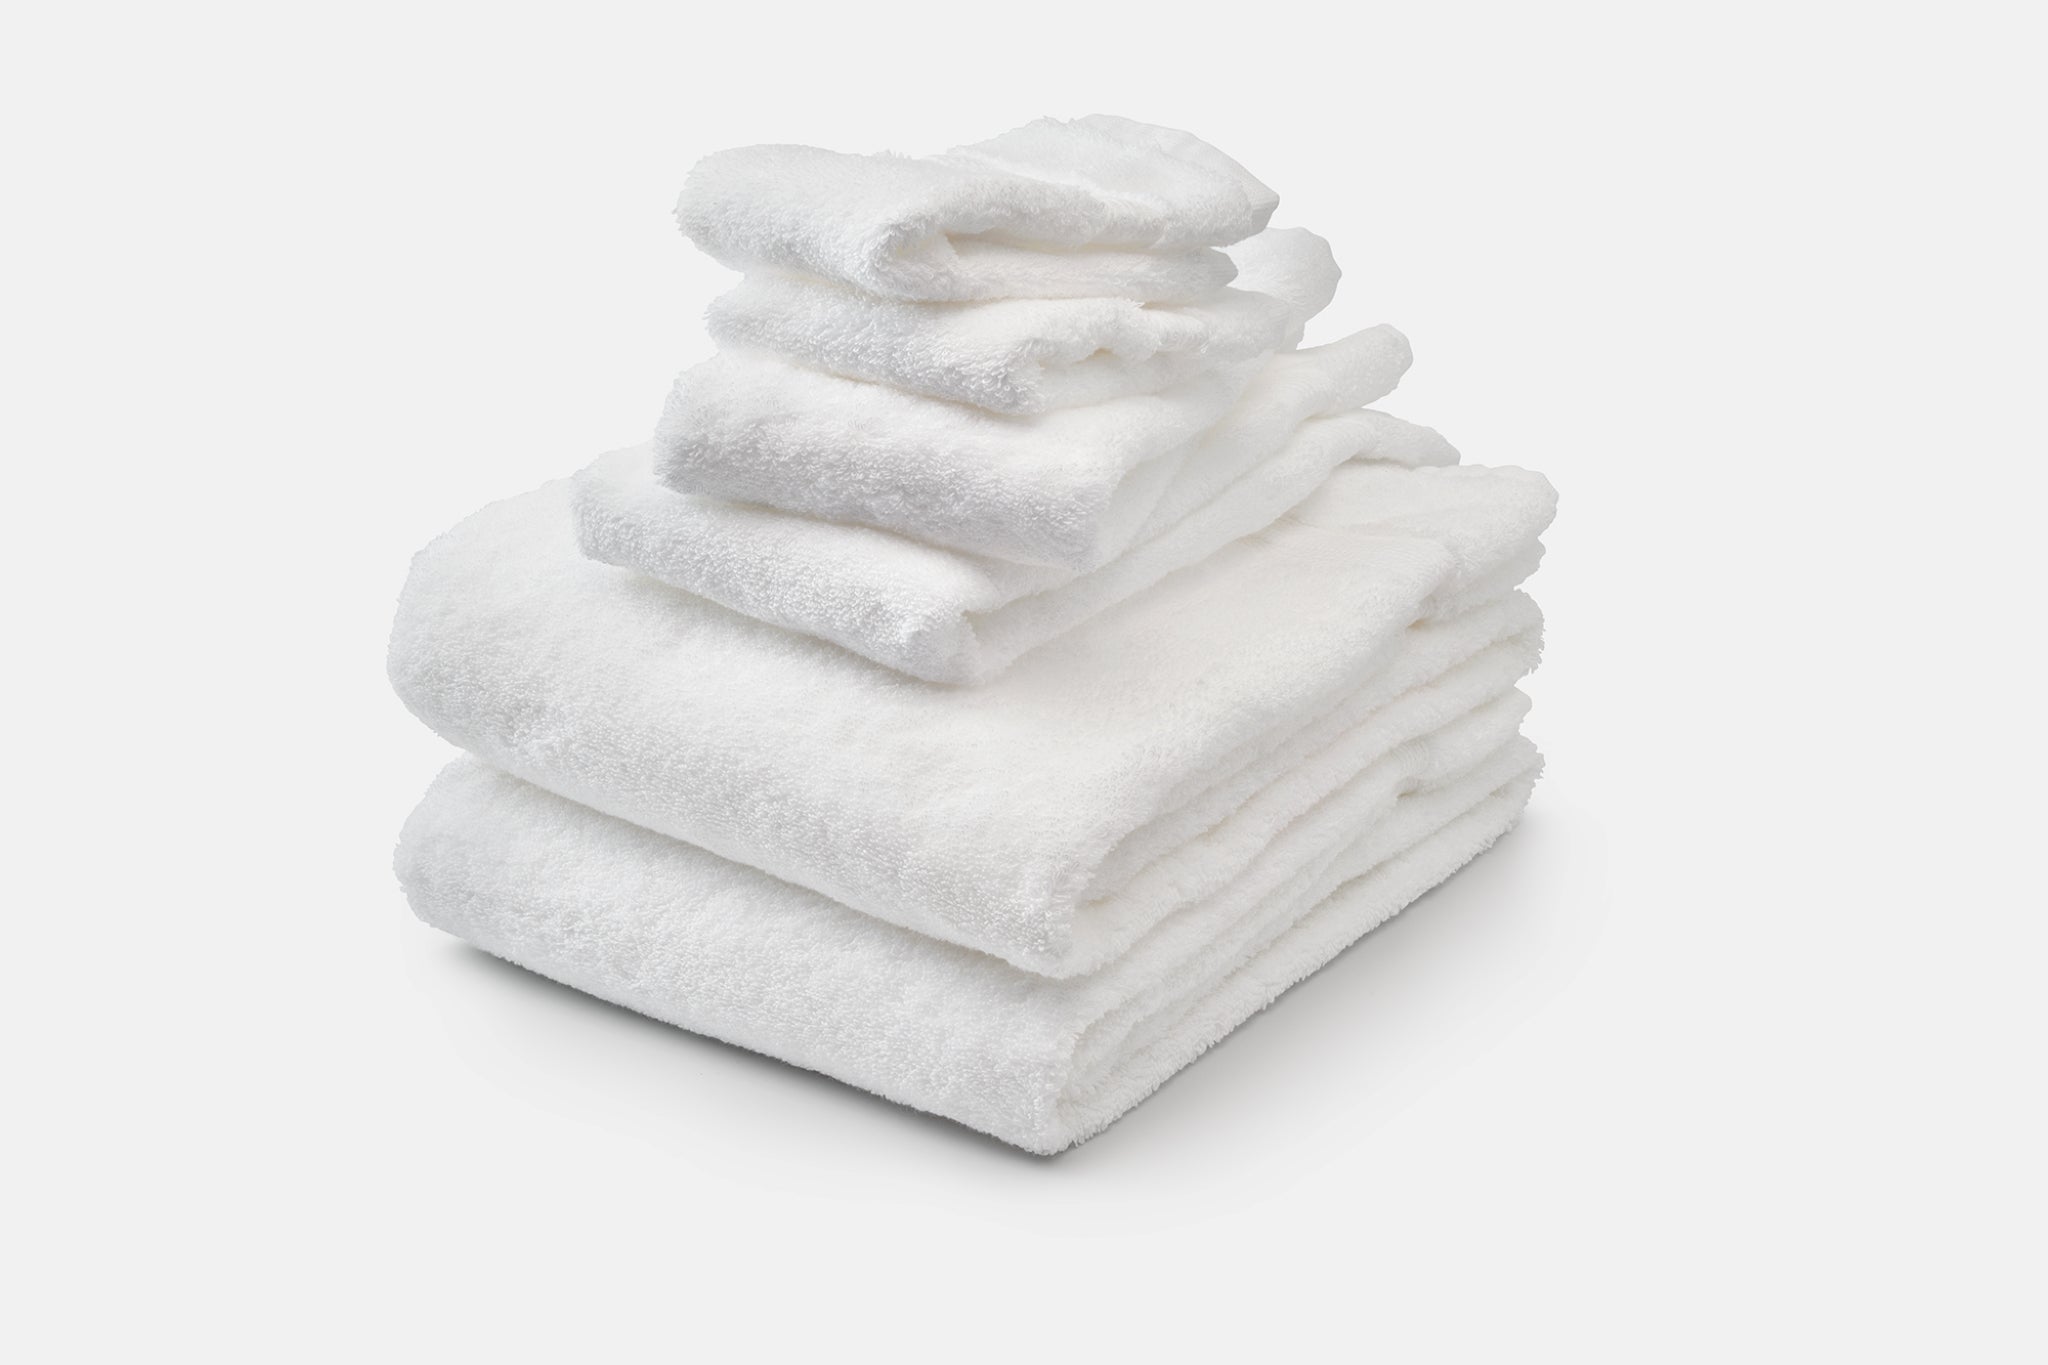 Cotton Bath Towel Sets